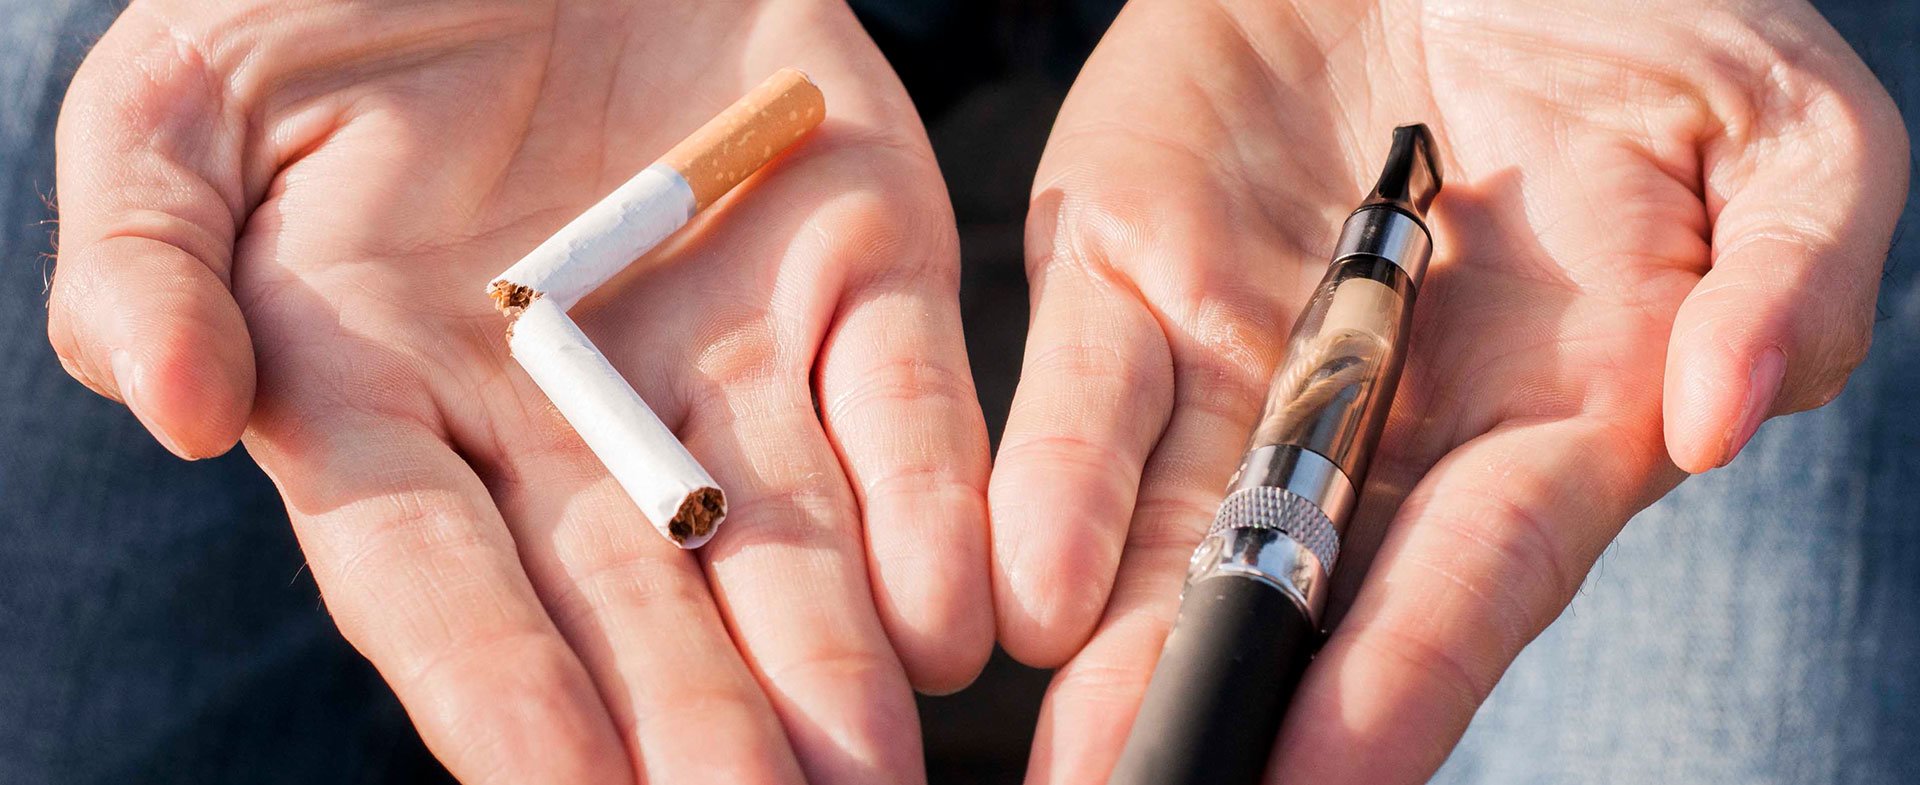 The Health Risks Of E-Cigarettes VS Traditional Cigarettes